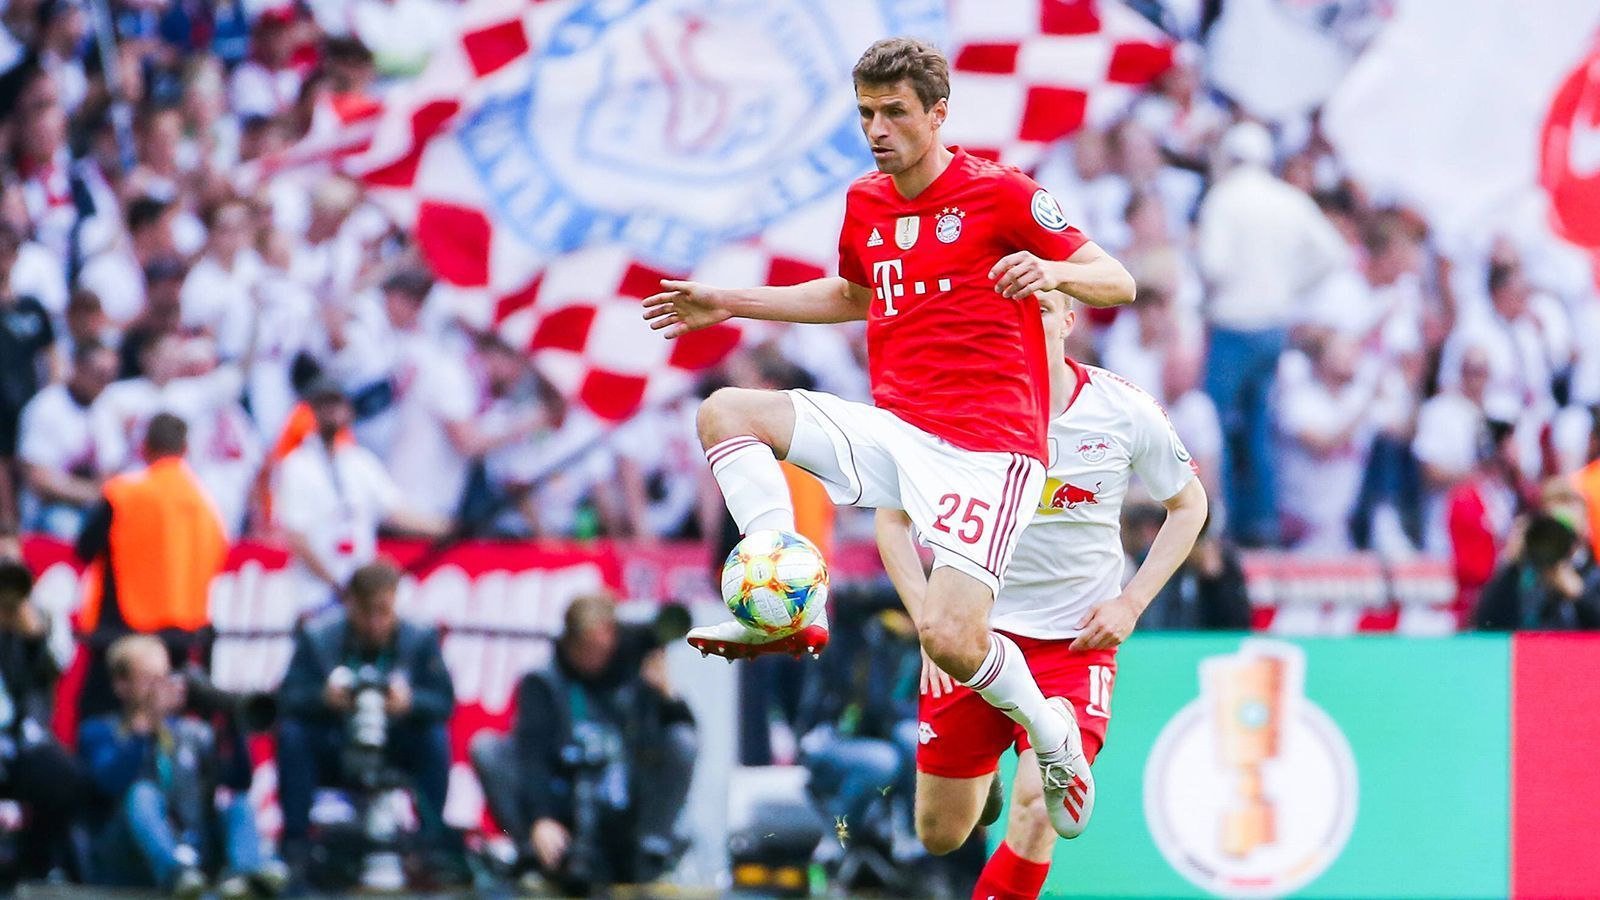 
                <strong>Thomas Müller (FC Bayern München)</strong><br>
                Kommt nicht gut ins Spoiel, ein bisschen schludrig in seinen Aktionen, uneffektiv und auch unpräzise. Kommt auch im weiteren Verlauf nicht in den Rhythmus. Hat er den Ball, gelingt nicht viel. Sehr blass. ran-Note: 4
              